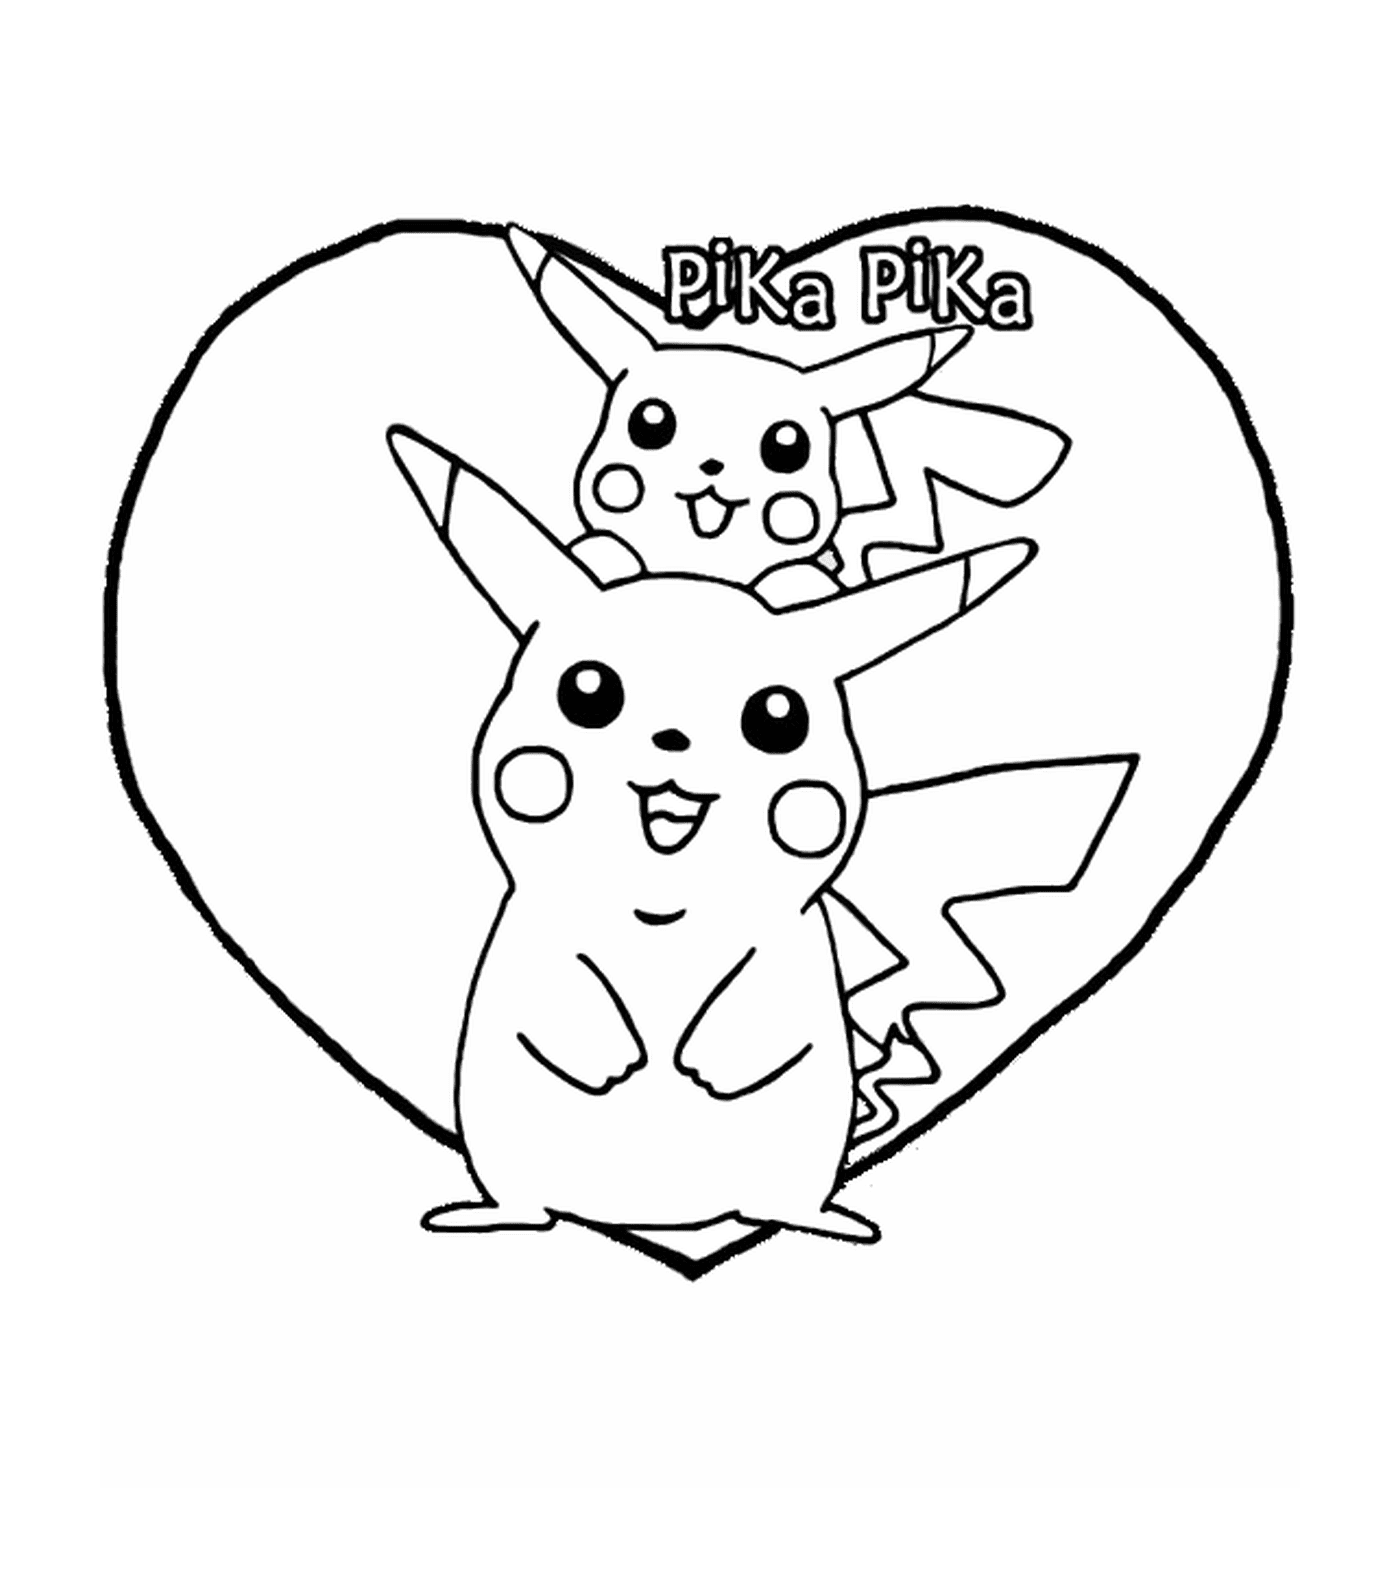  Pikachu, entzückendes Herz 